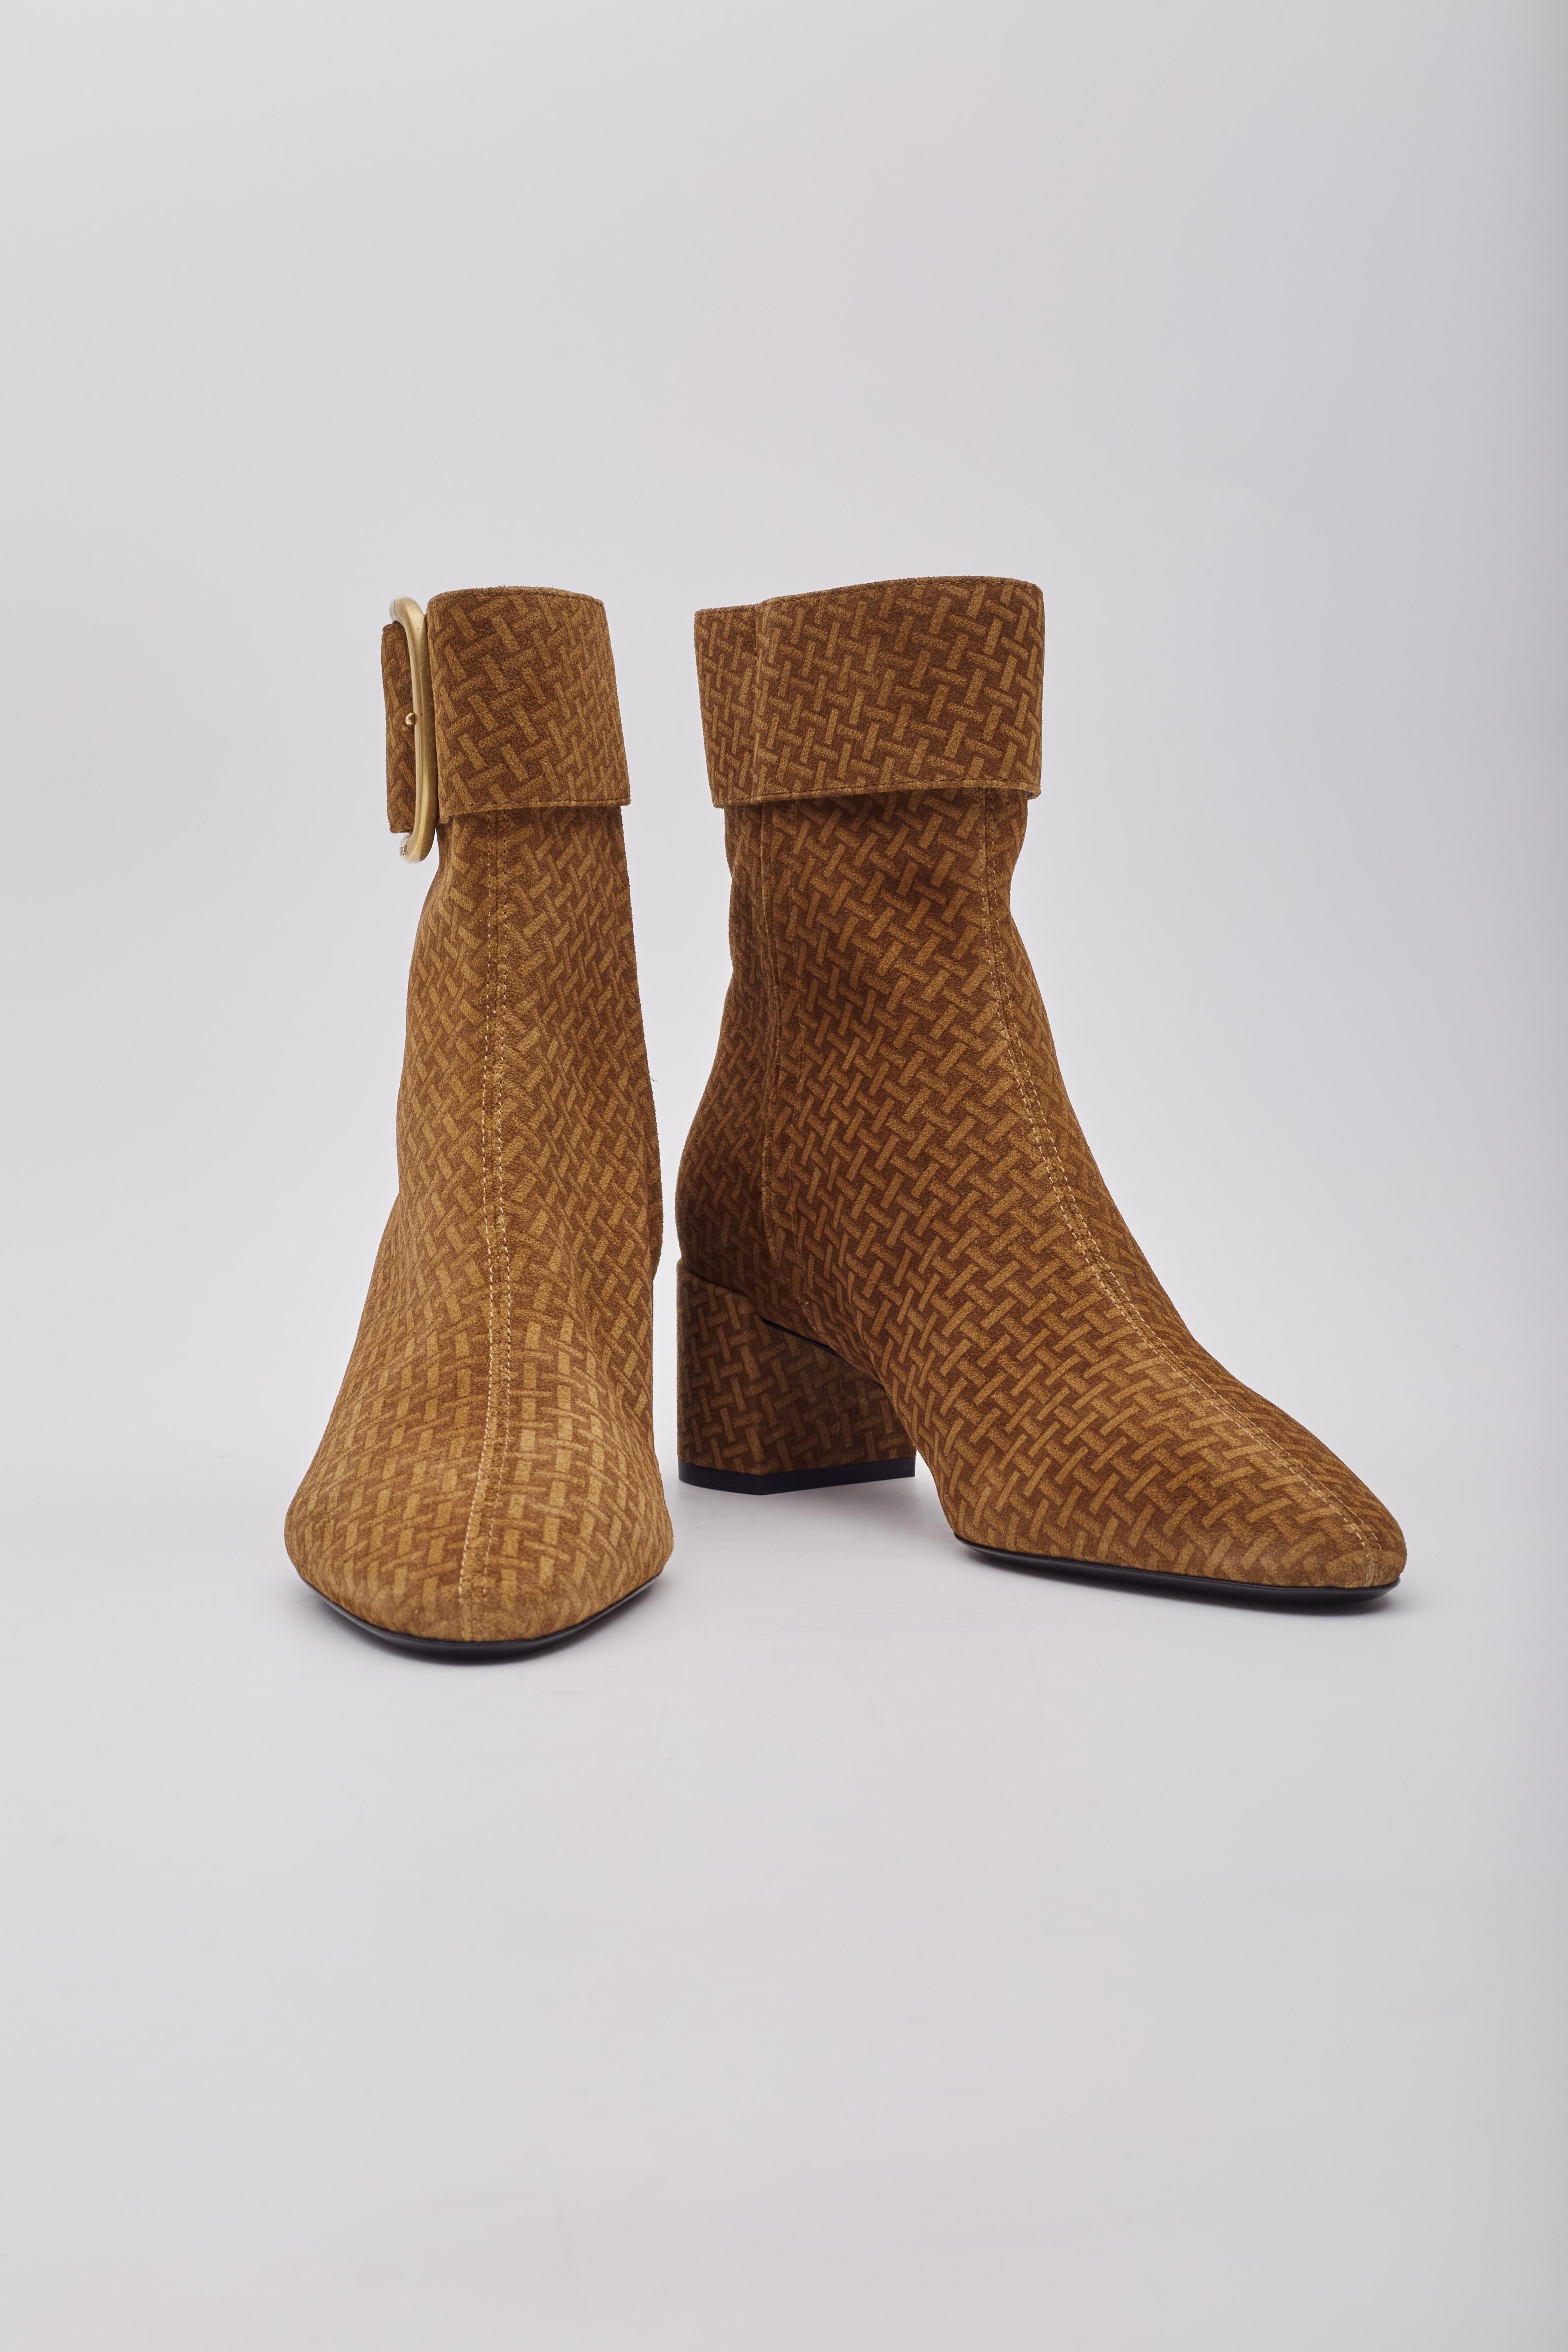 Les bottines Saint Laurent se caractérisent par un cuir suédé, un motif tressé imprimé autour de la chaussure, un bout en amande, une boucle et une fermeture éclair avec gravure sur la boucle et un talon de 50 mm.

Couleur : marron avec impression